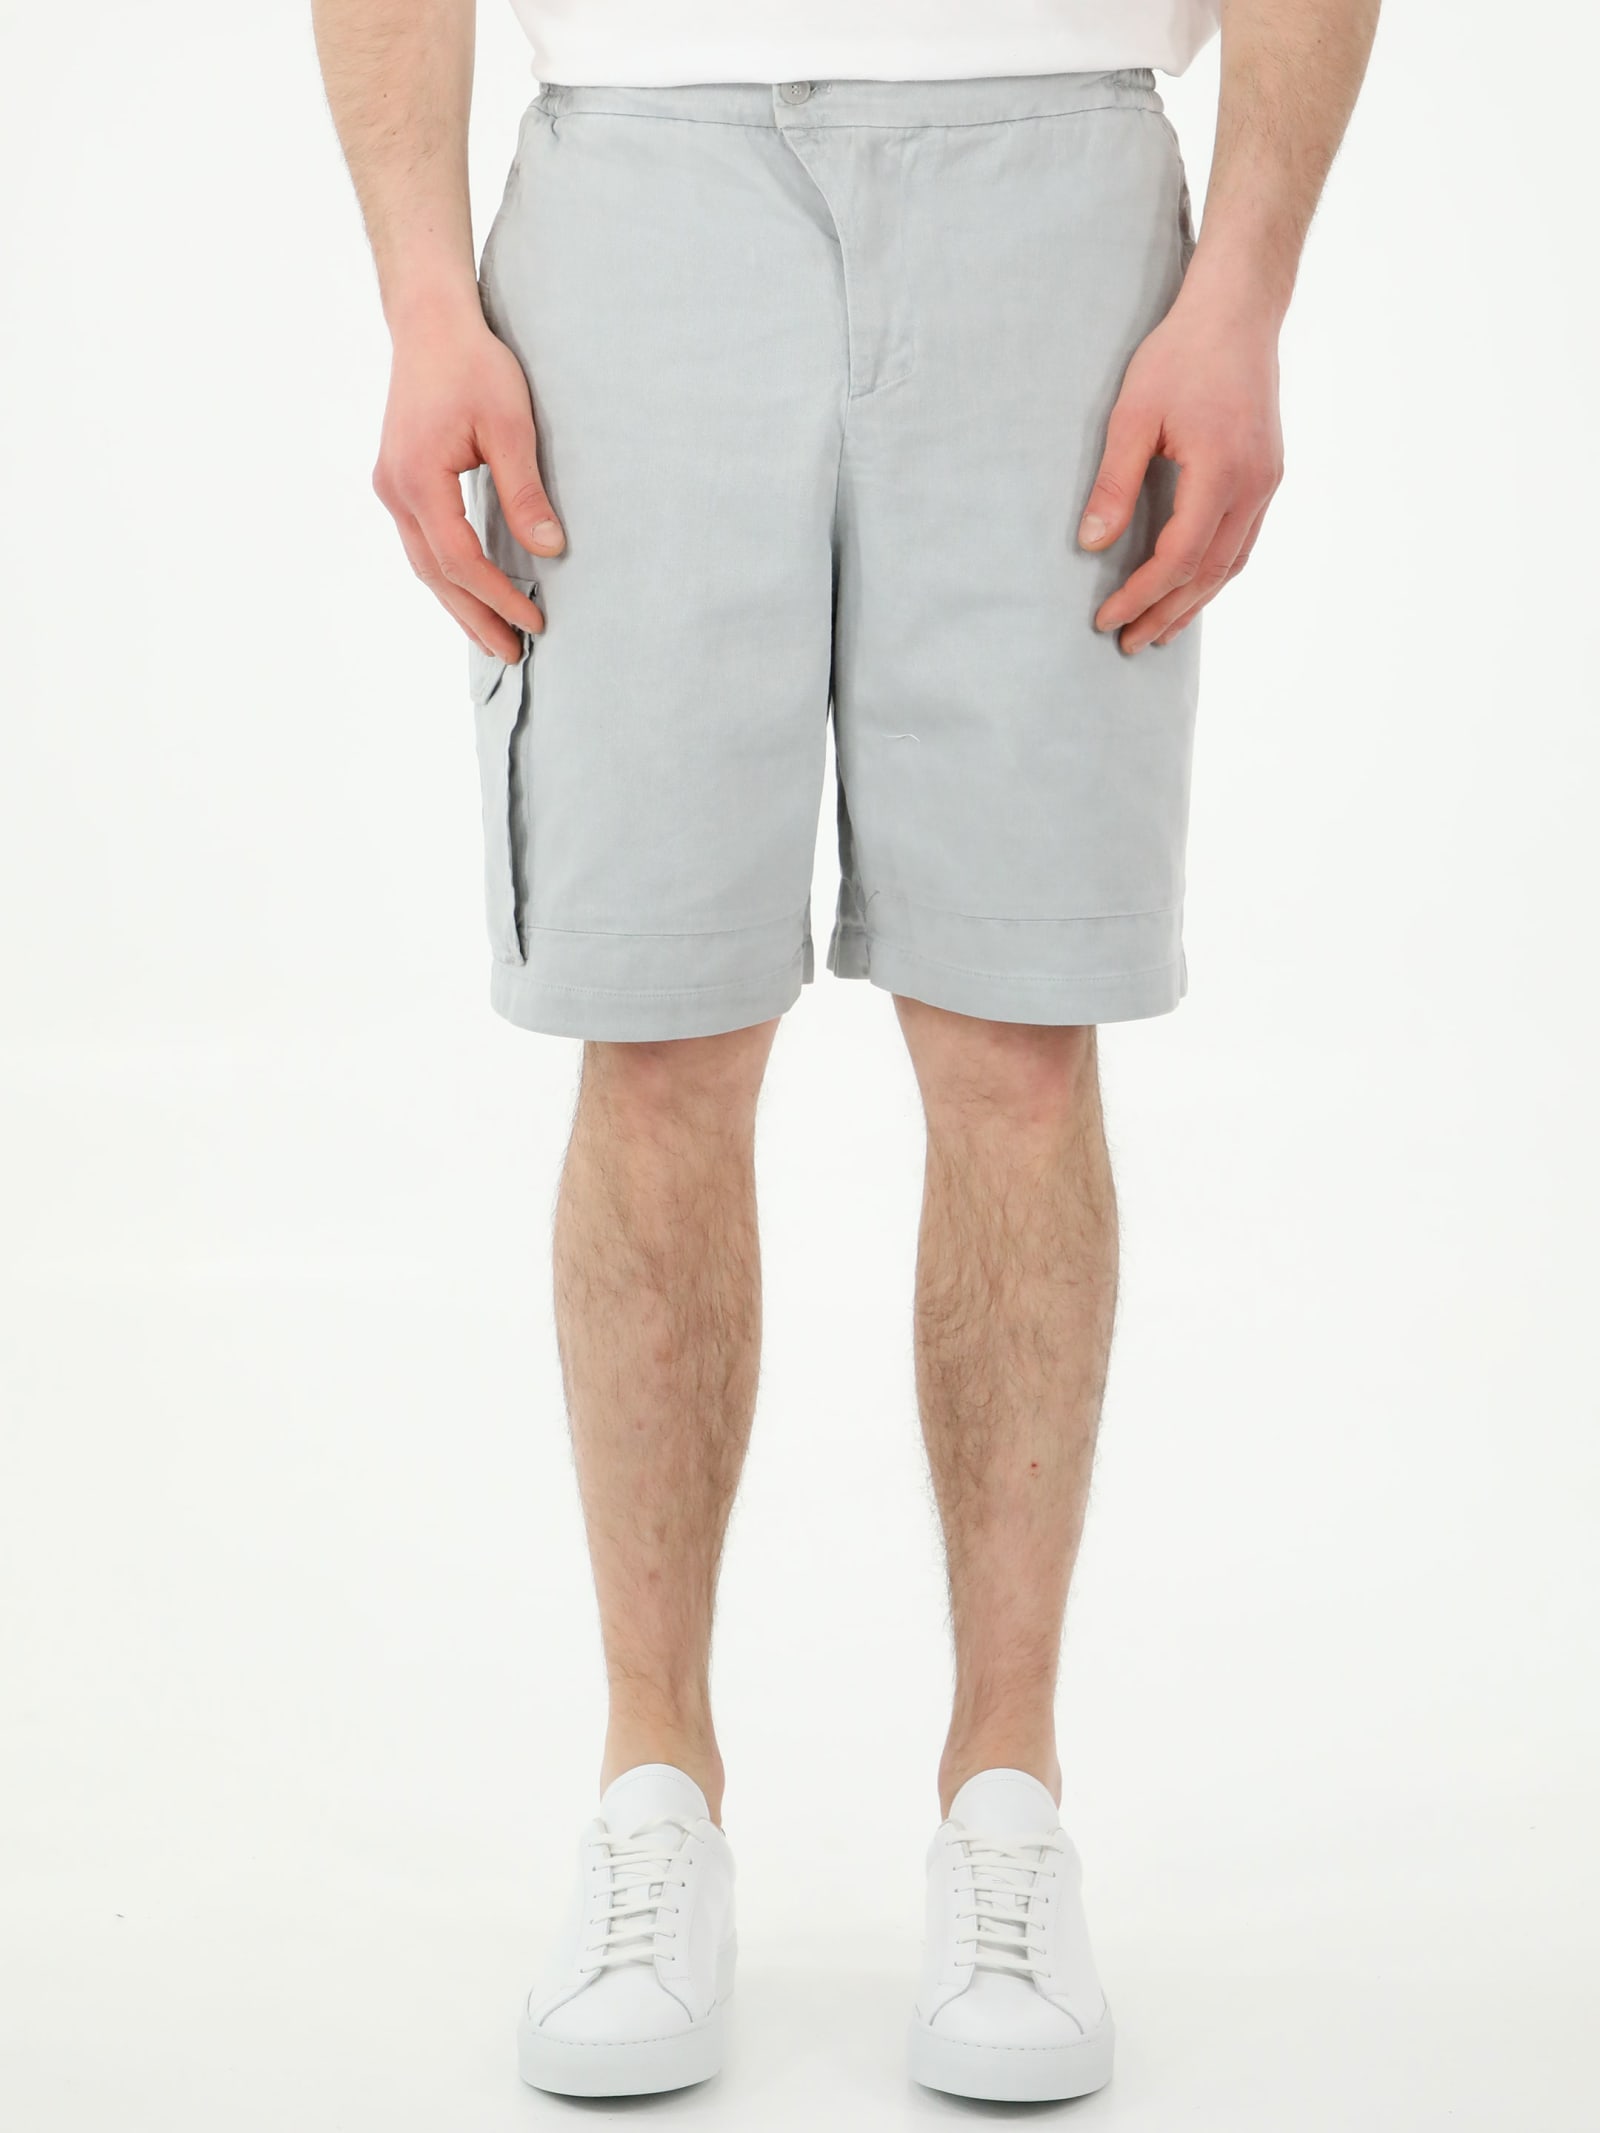 A-COLD-WALL Density Grey Bermuda Shorts